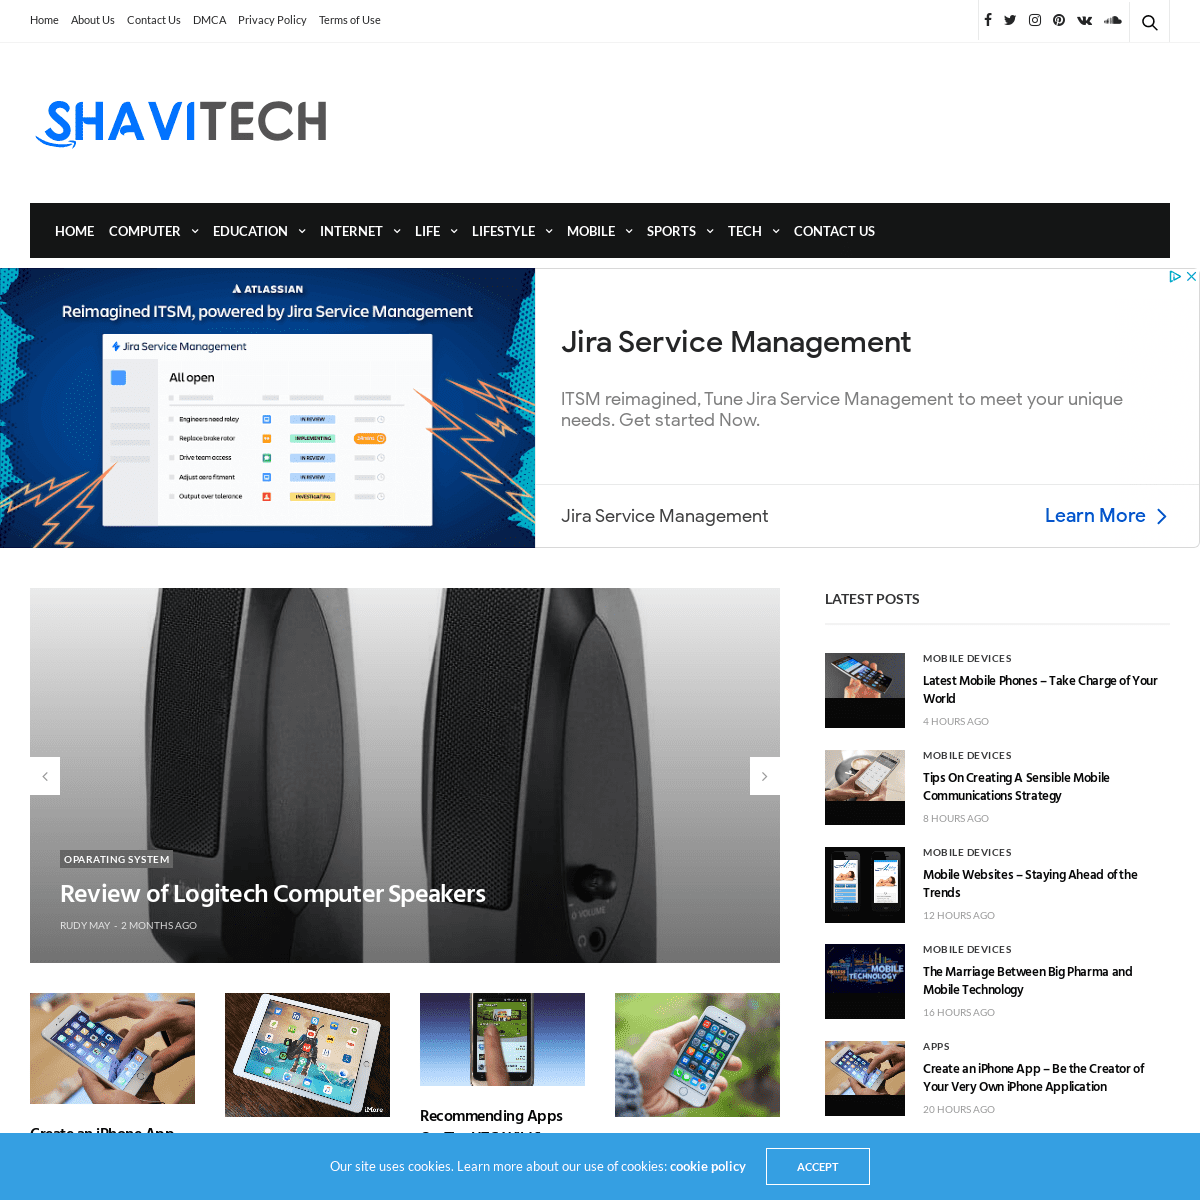 A complete backup of https://shavitech.com